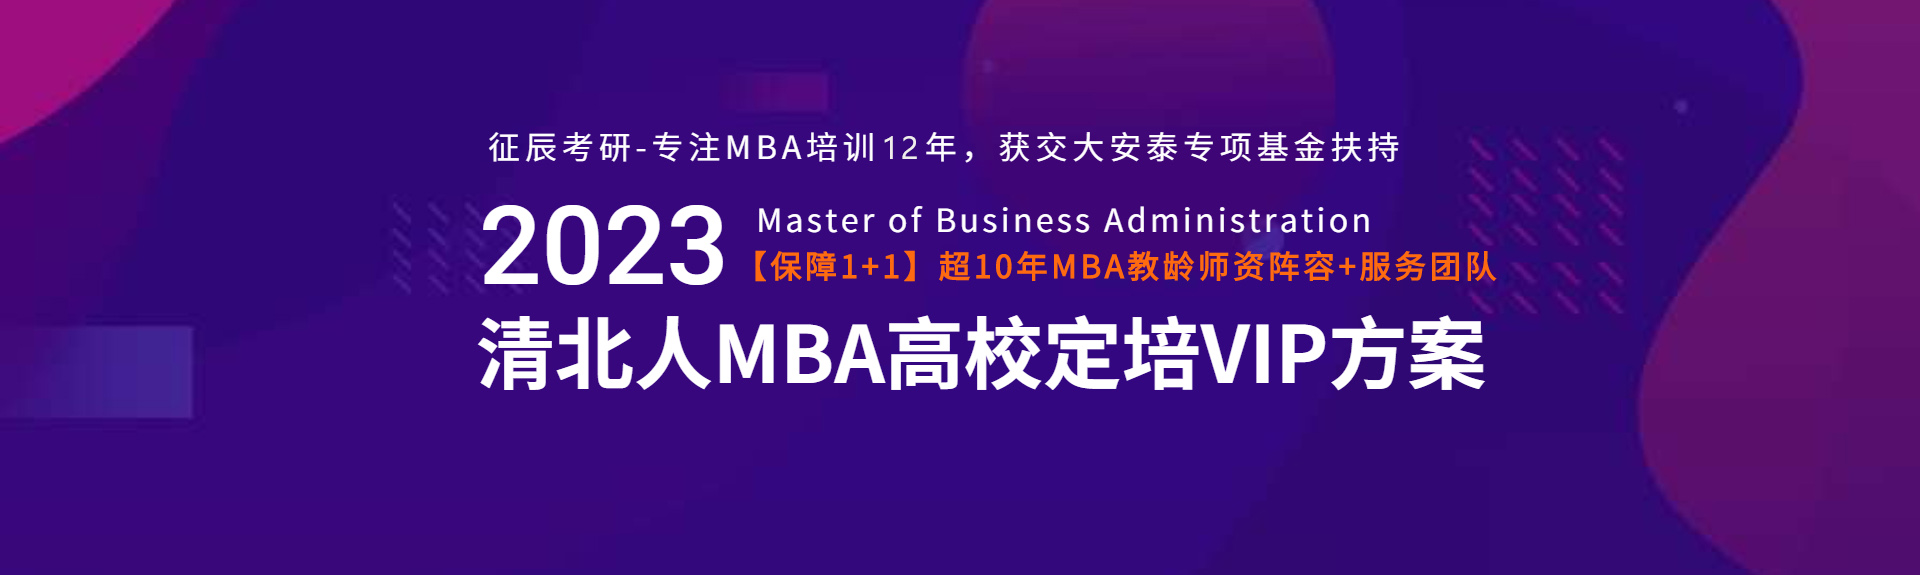 北京征辰MBA2023清北人VIP方案